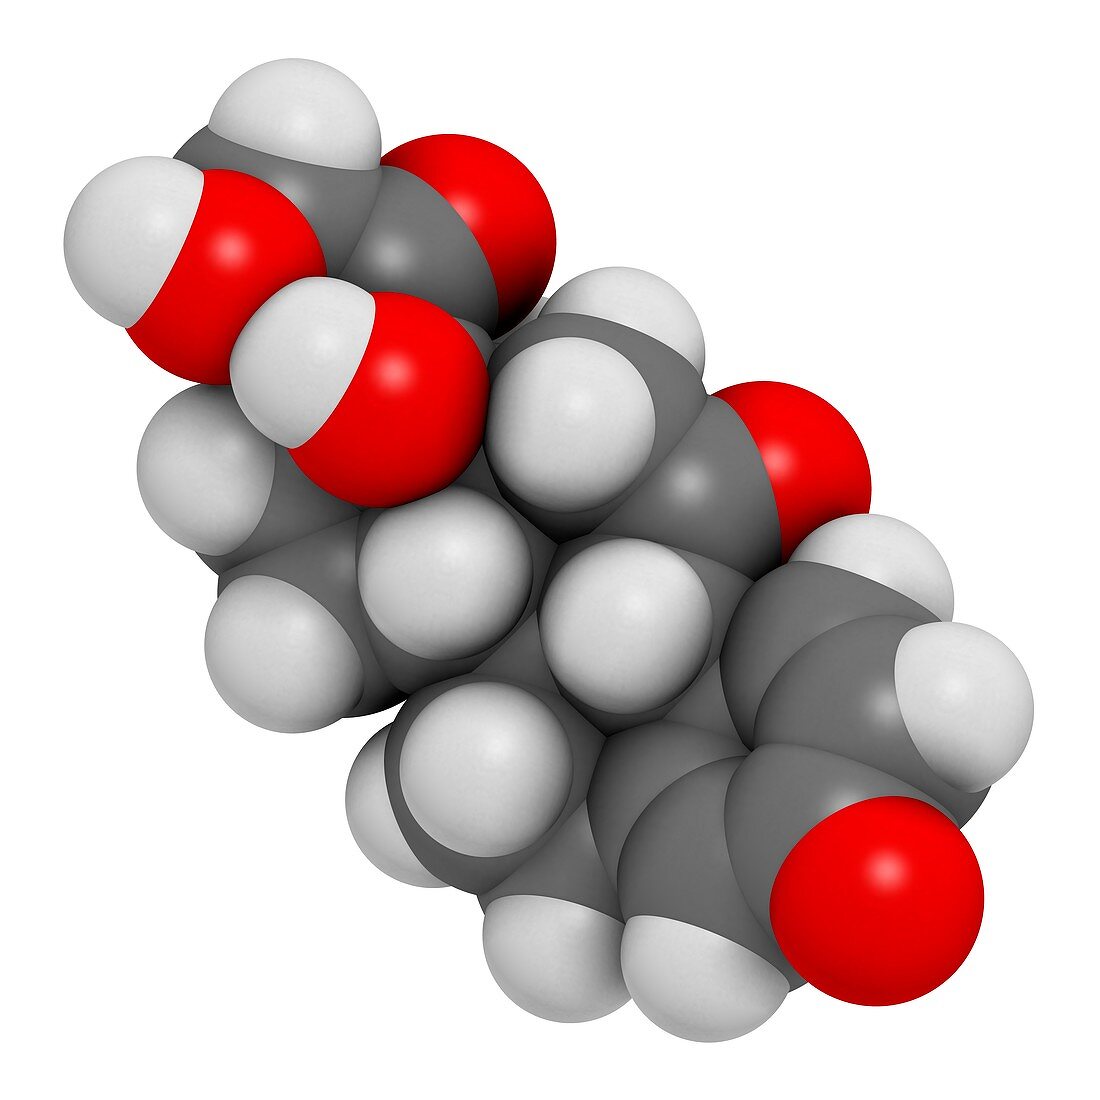 Prednisone corticosteroid drug molecule